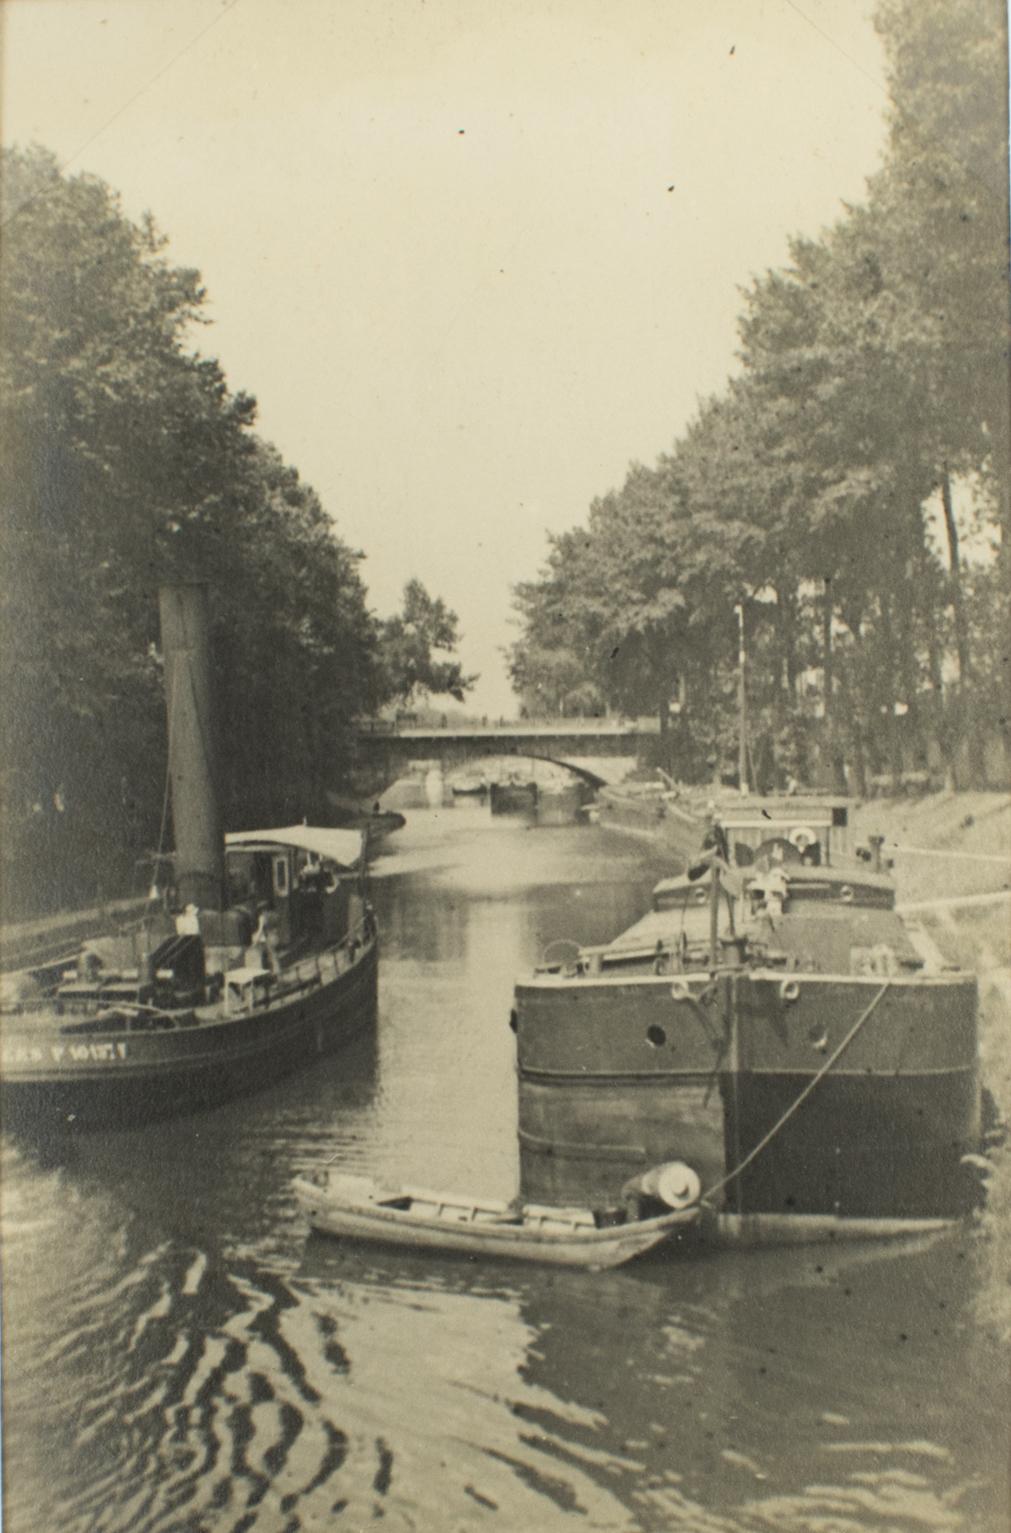 Barge Boats in der Nähe von Paris, Frankreich 1926, Silber-Gelatine-Schwarz-Weiß-Fotografie